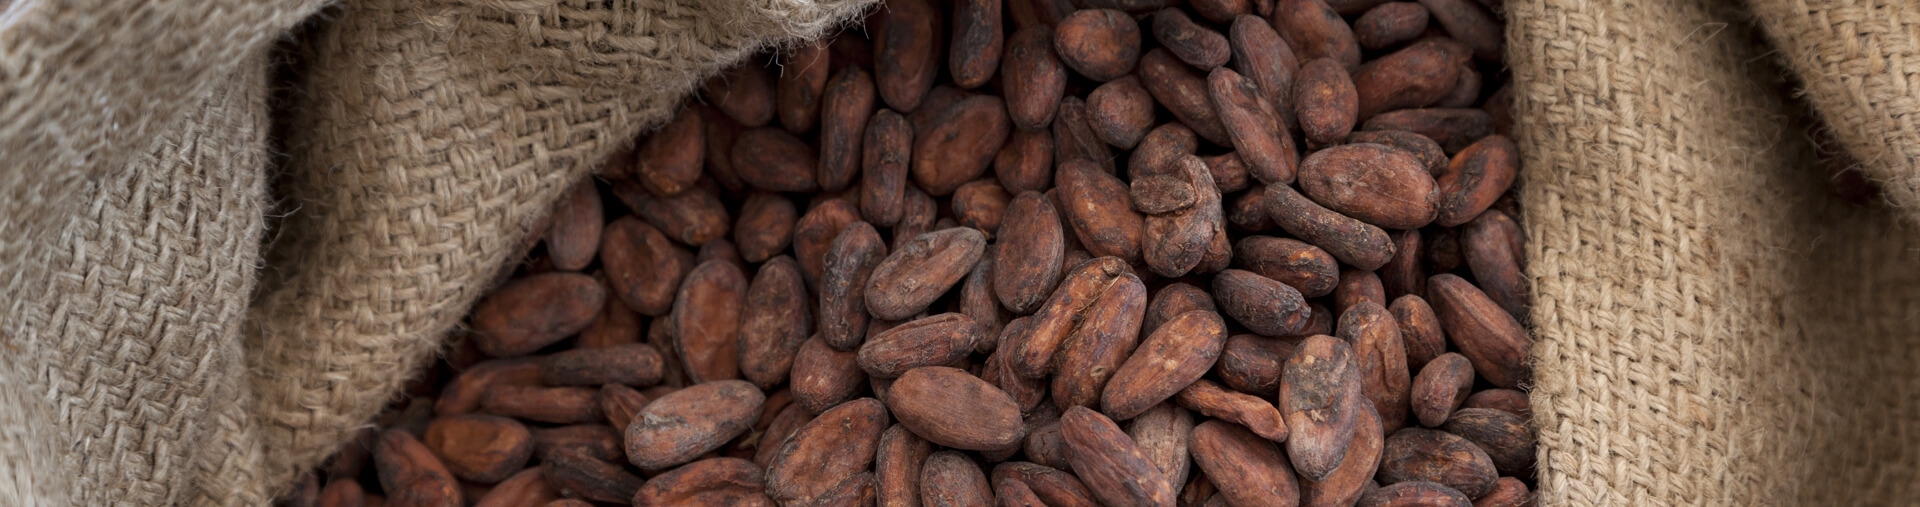 D-Van-Tuly-Bruinisse-Voor-Cacao-Zaden-Peulvruchten2